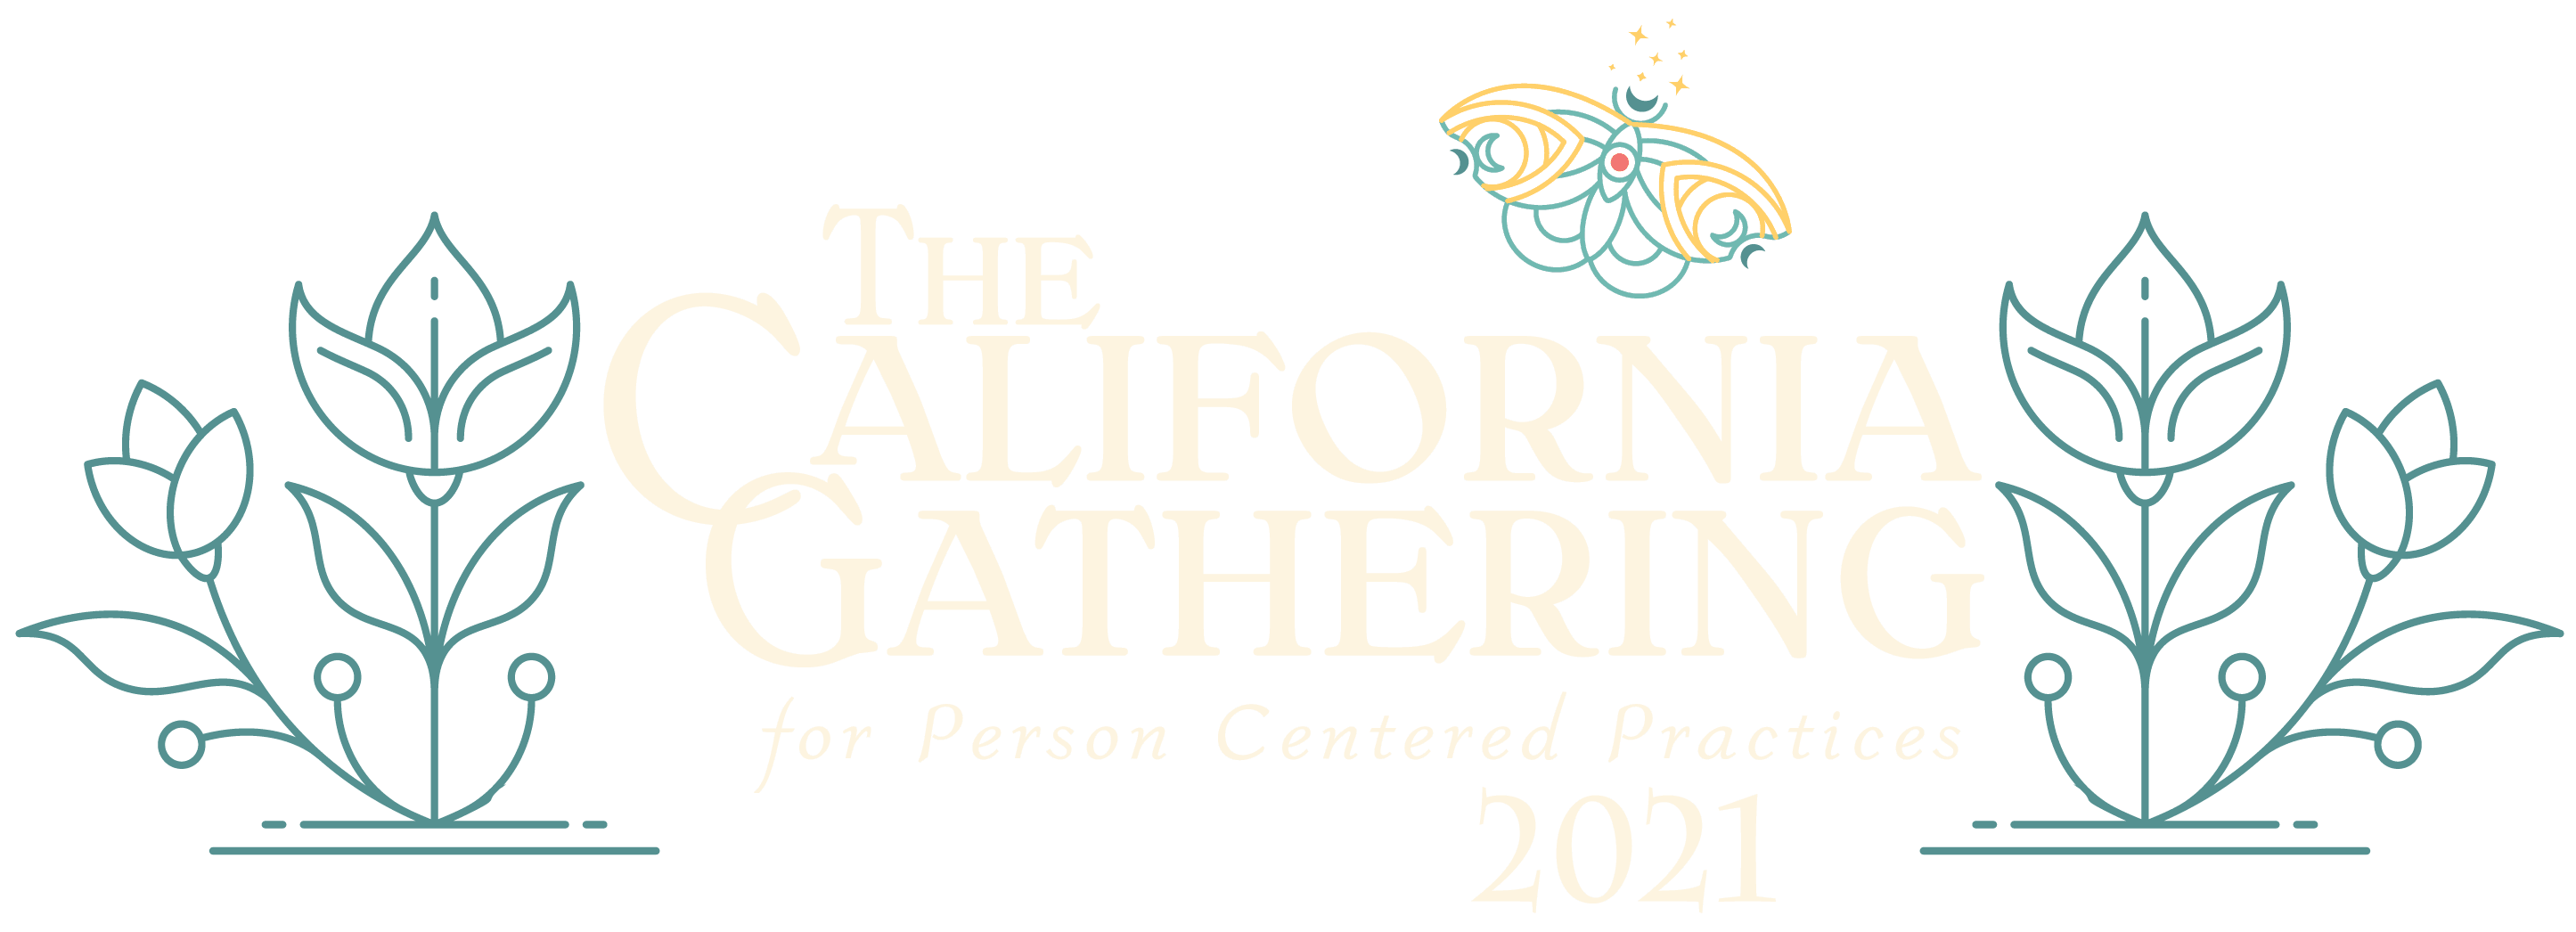 2021 年加州以人为本实践聚会